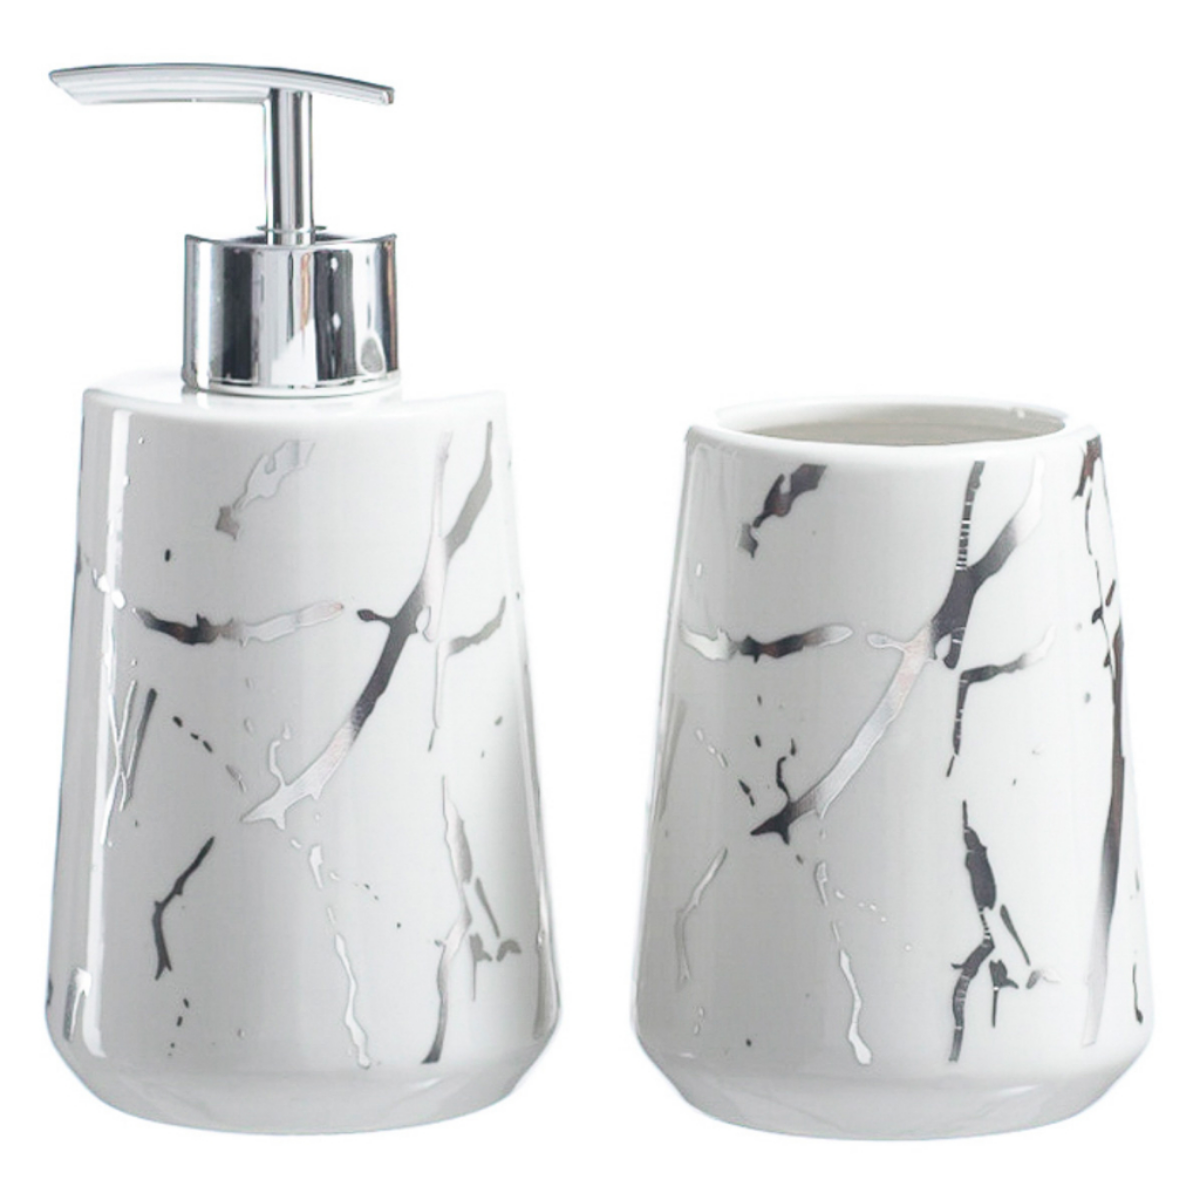 Kits Banheiro Lavabo de Porcelana Dispenser Sabonete Premium:prata - 1